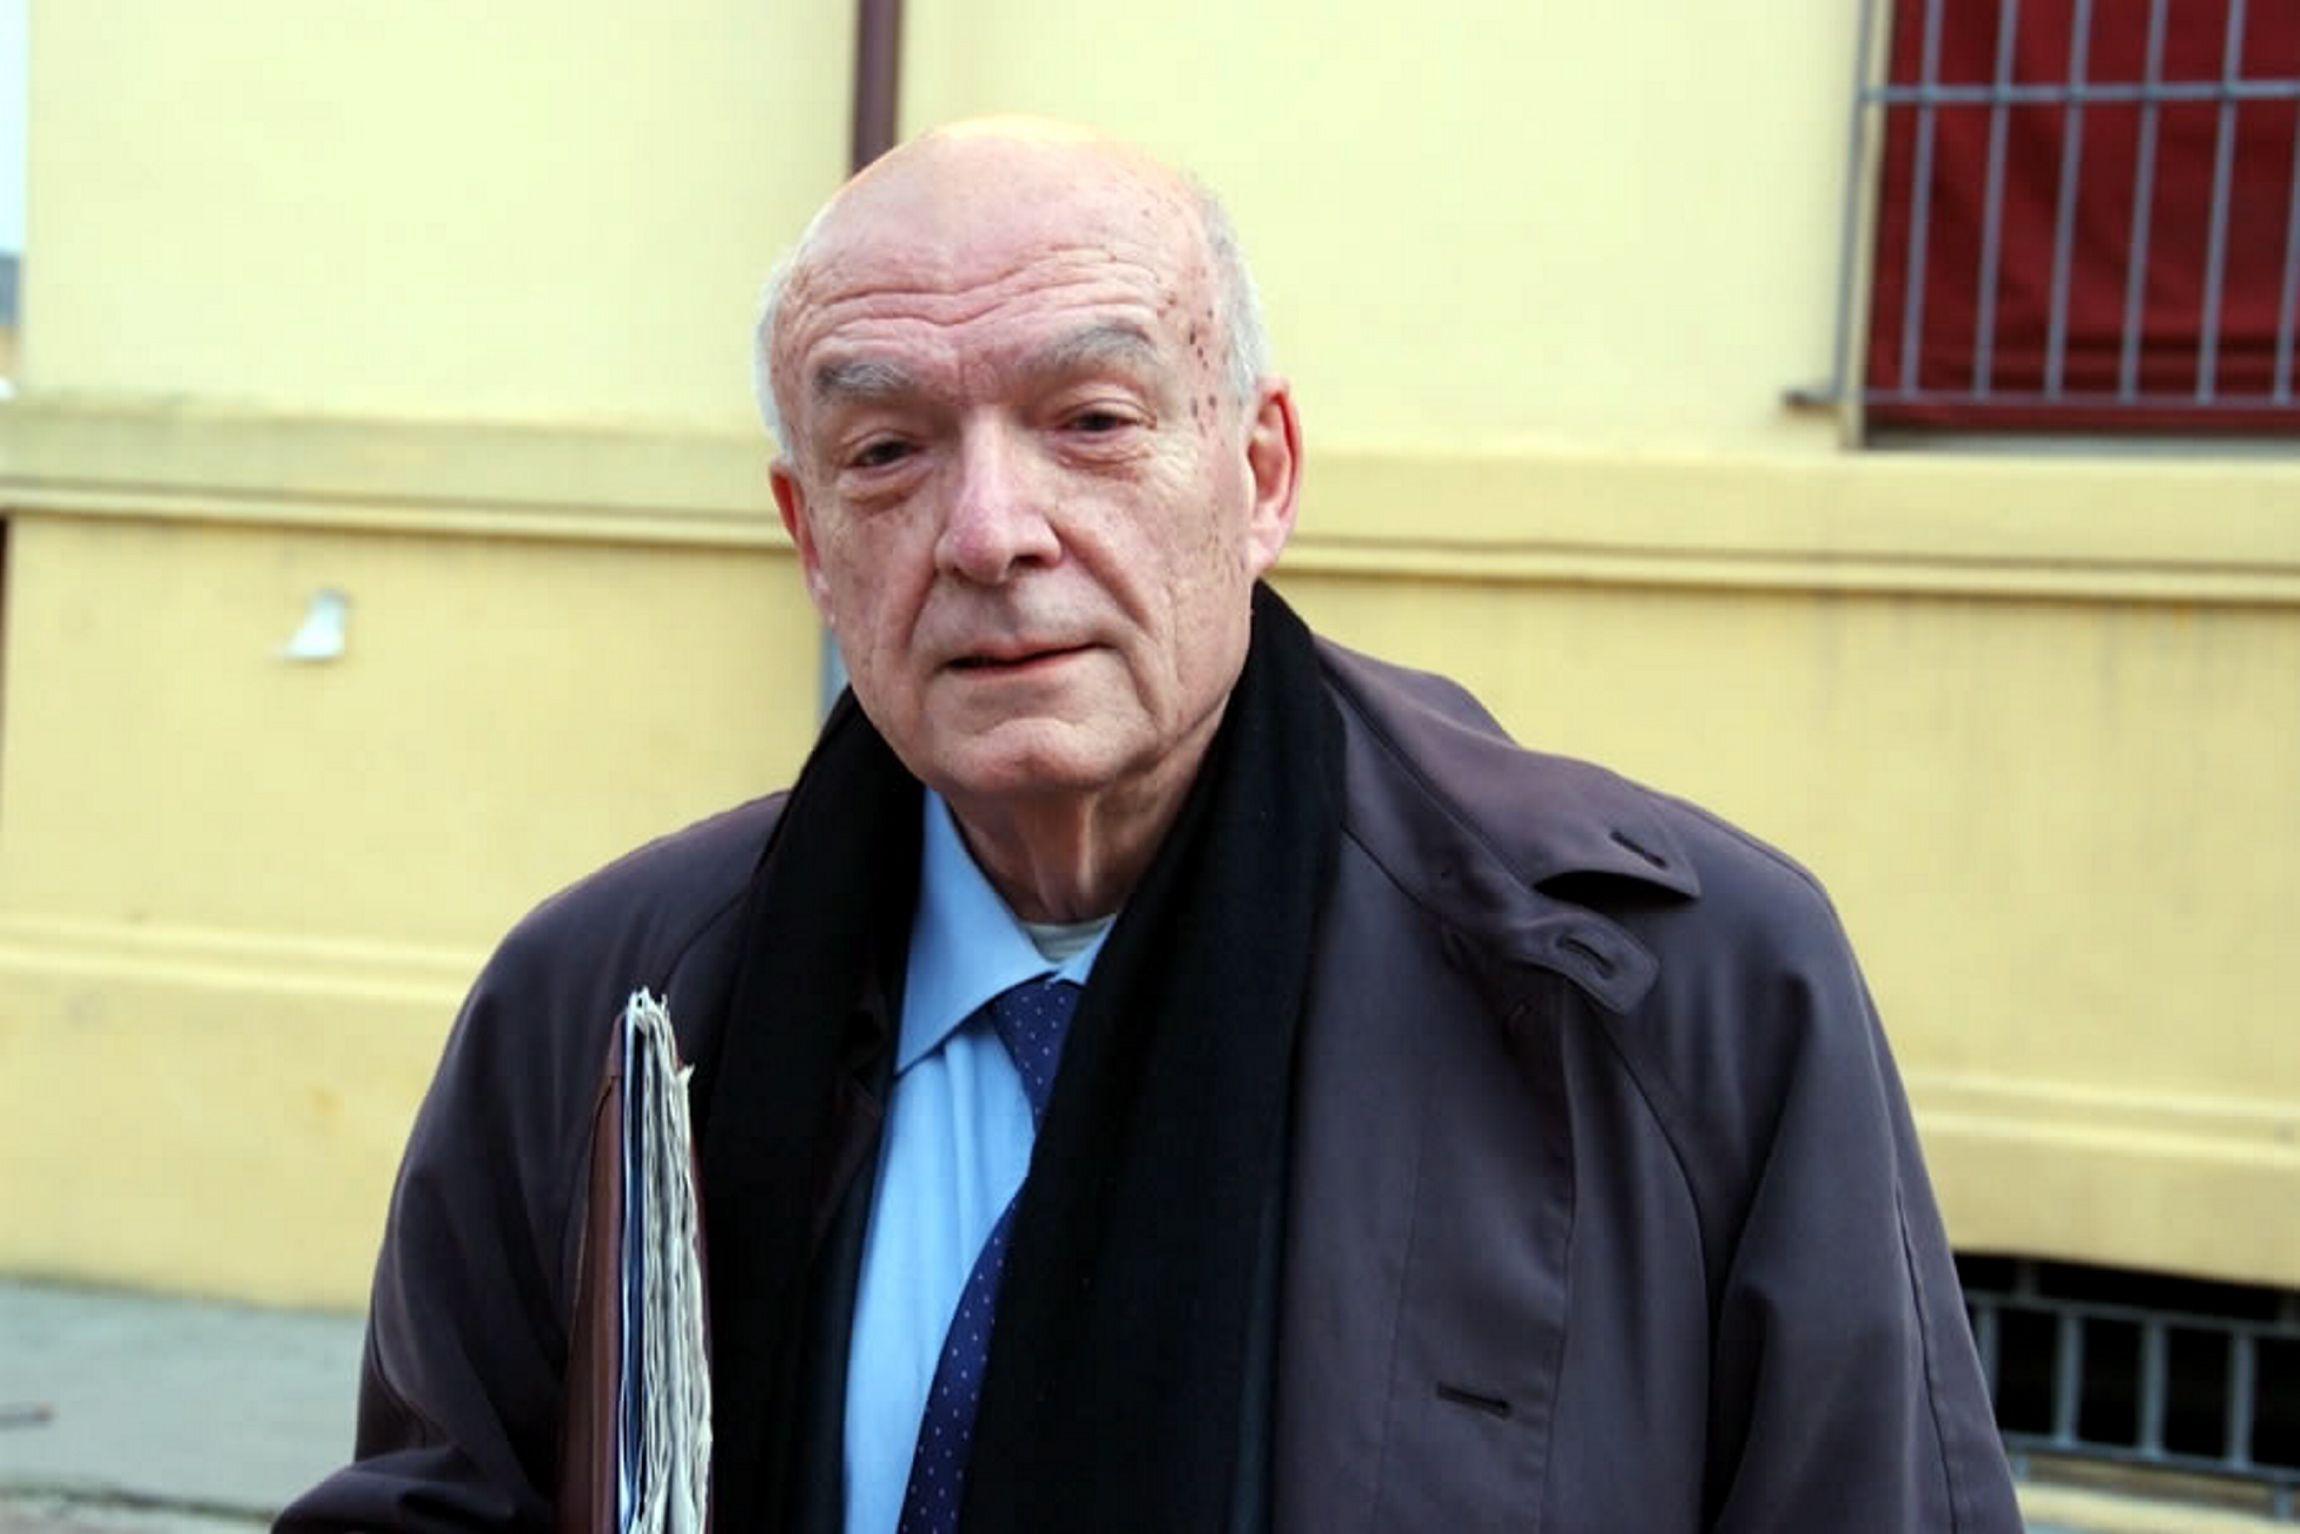 Morto Antonio Paolucci, ex ministro dei Beni culturali aveva 84 anni